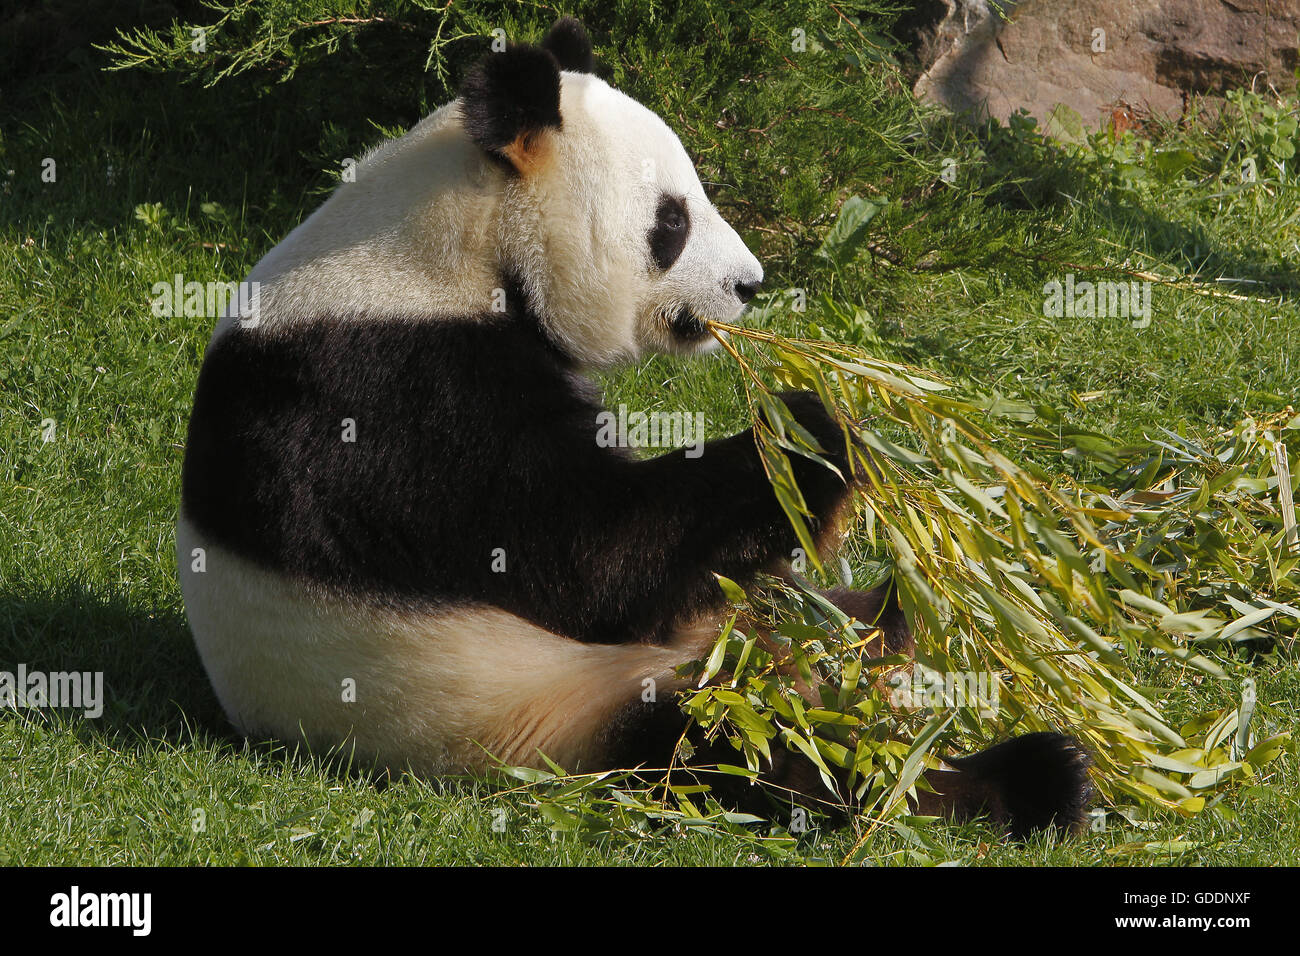 El panda gigante, Ailuropoda melanoleuca, adulto comiendo hojas de bambú Foto de stock